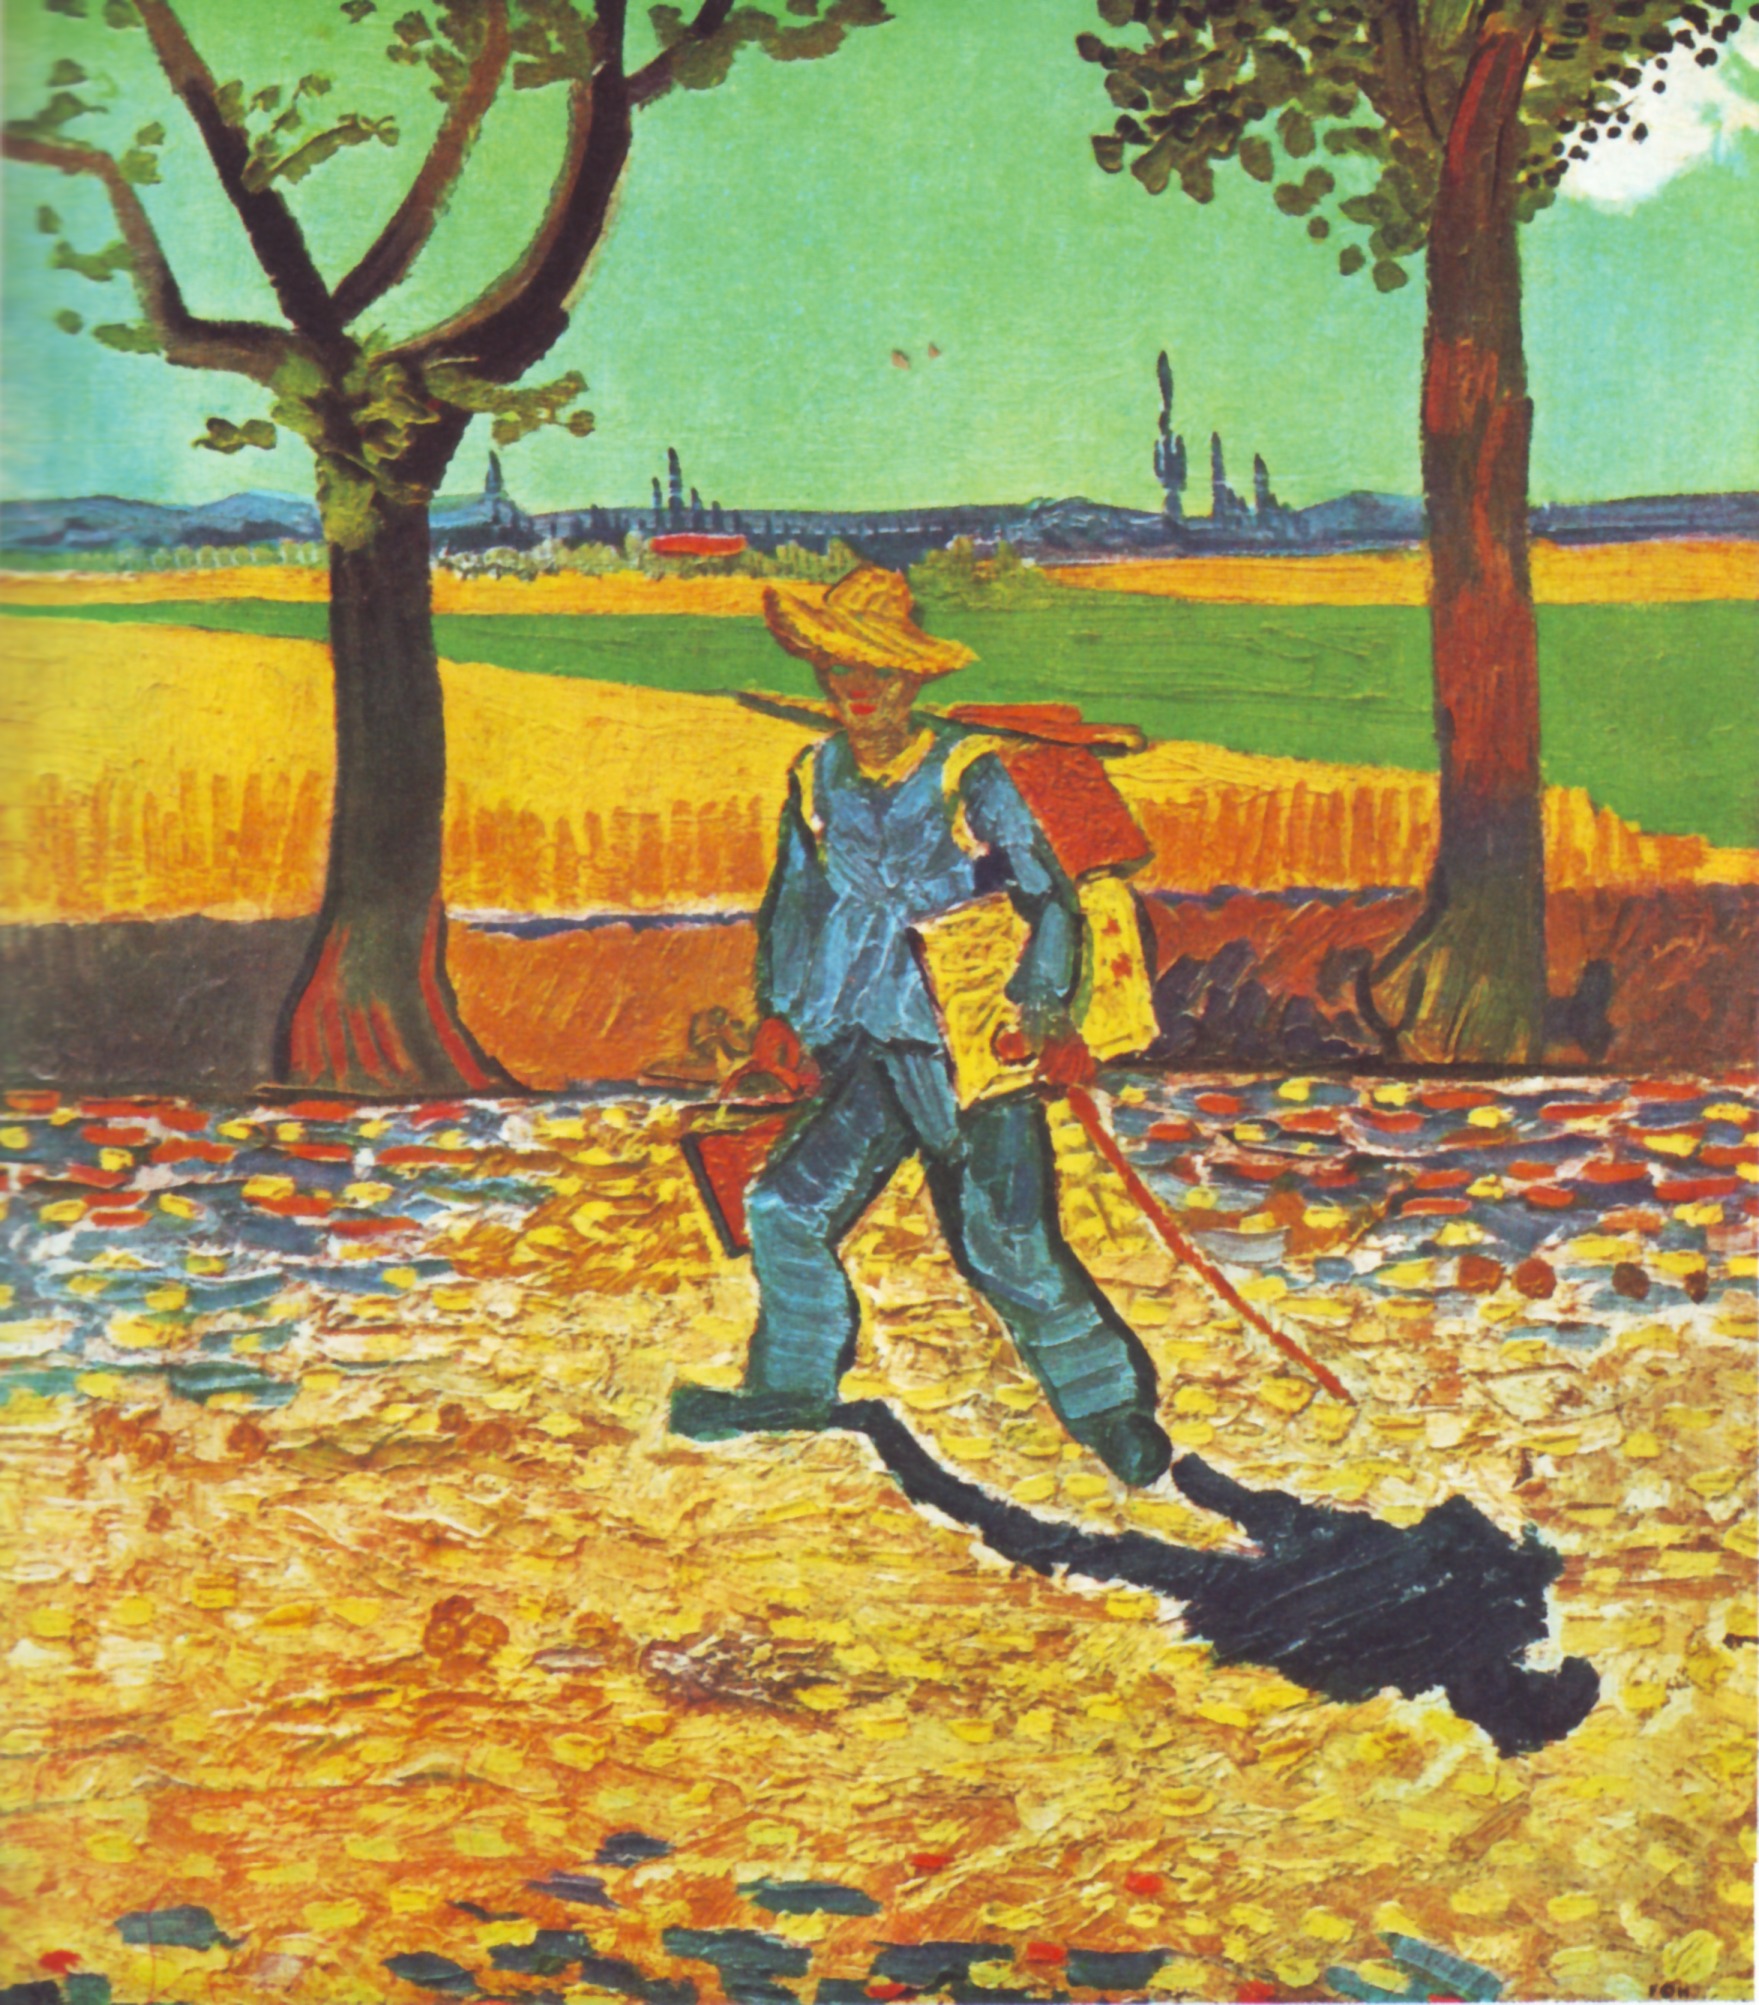 Malarz w drodze do pracy by Vincent van Gogh - 1888 - 48 × 44 cm 